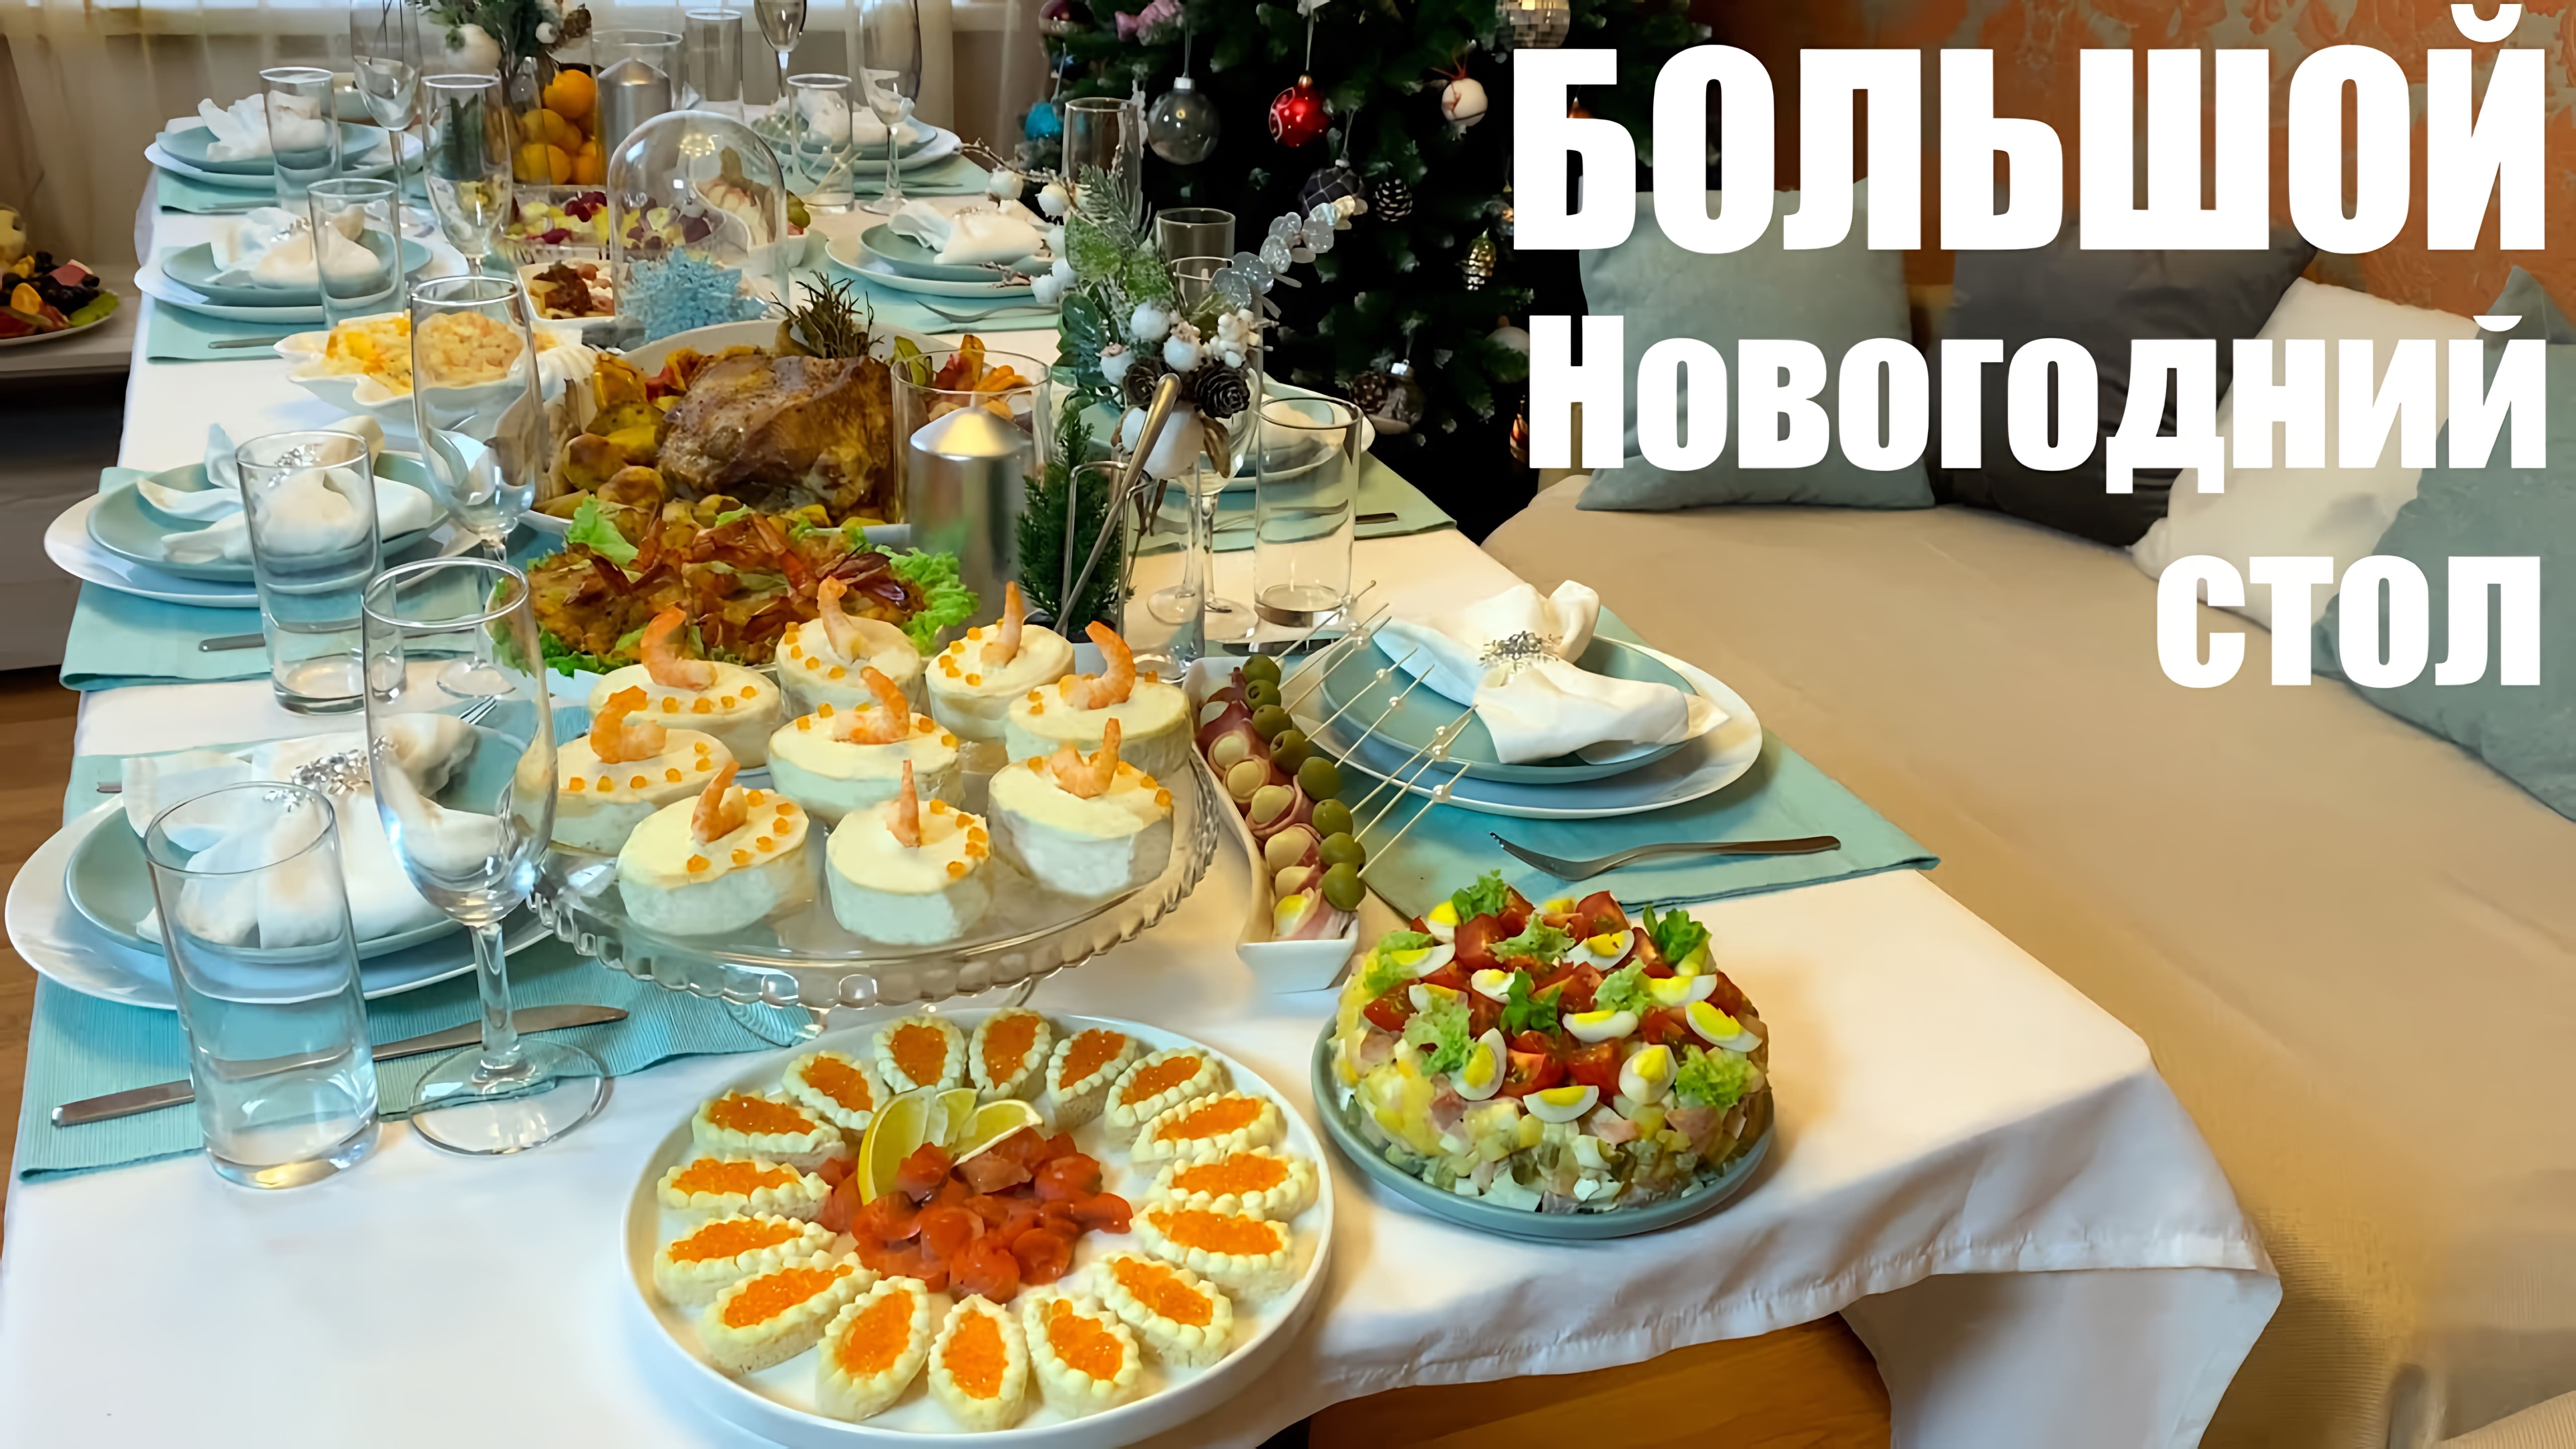 Видео: БОЛЬШОЙ Новогодний стол: 12 блюд, 8 человек.